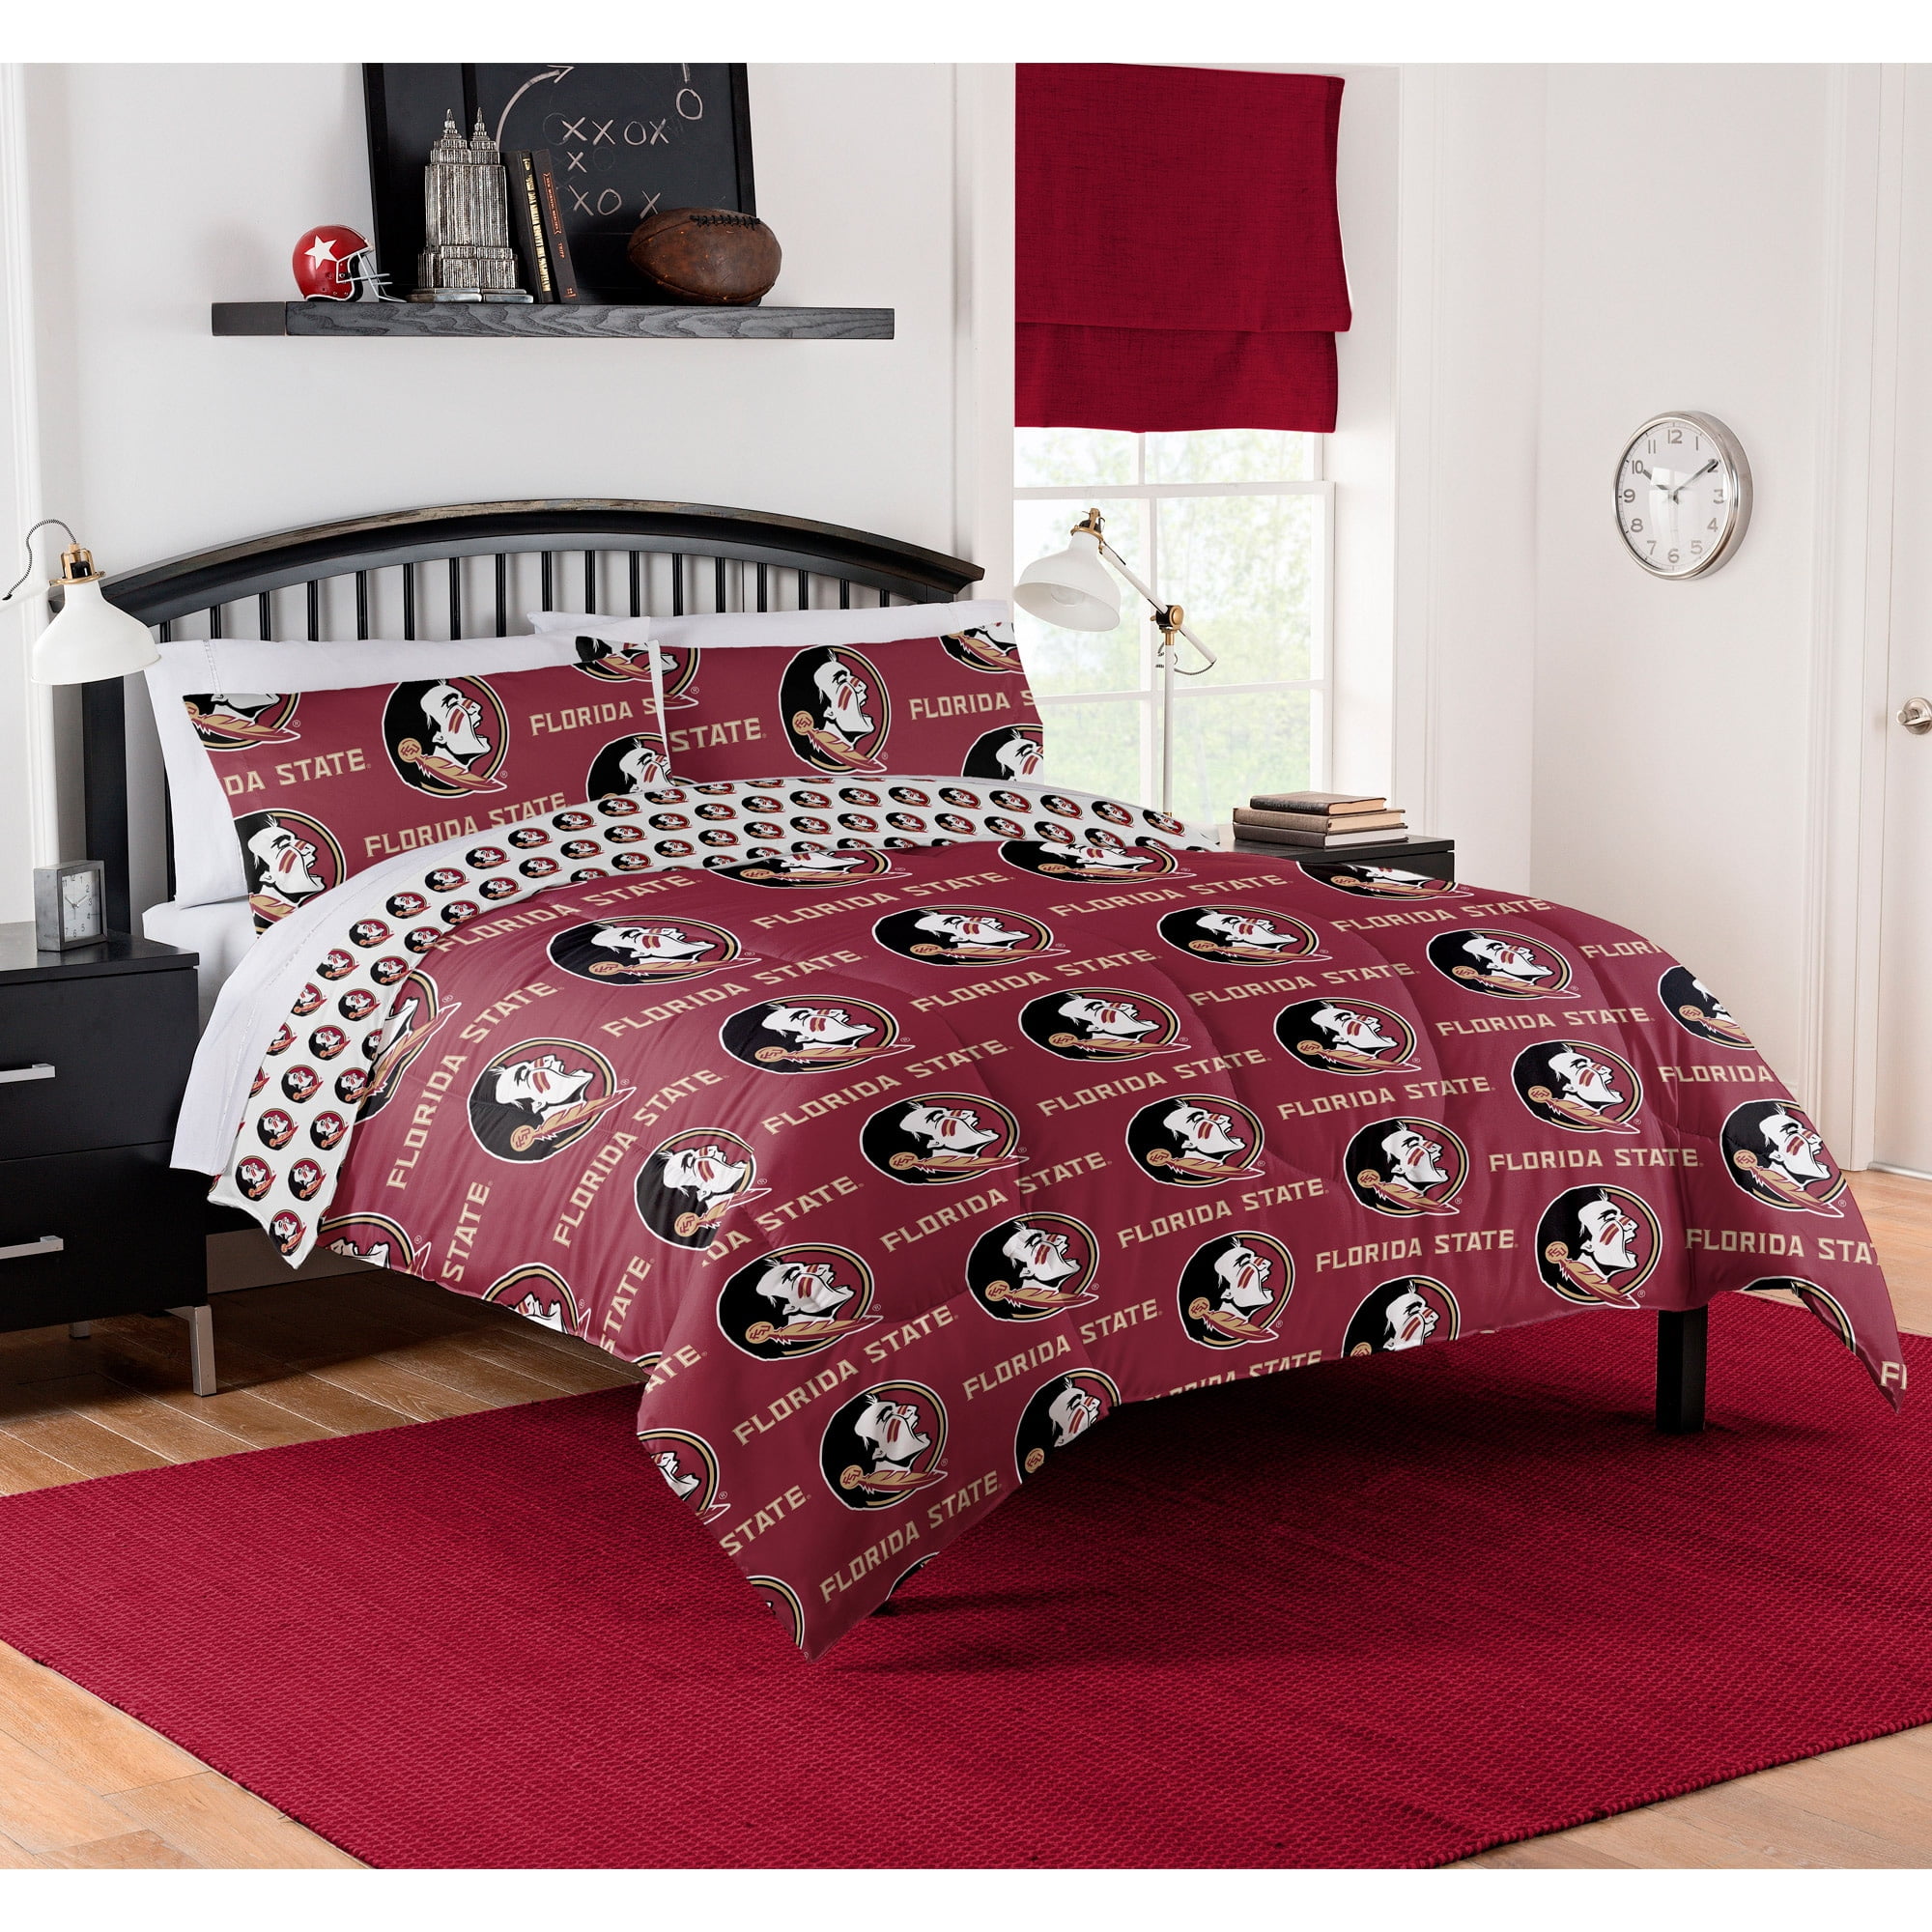 Queen Size Comforter & Sheet Set Alabama Crimson Tide NCAA Bedding Polyester NEW 